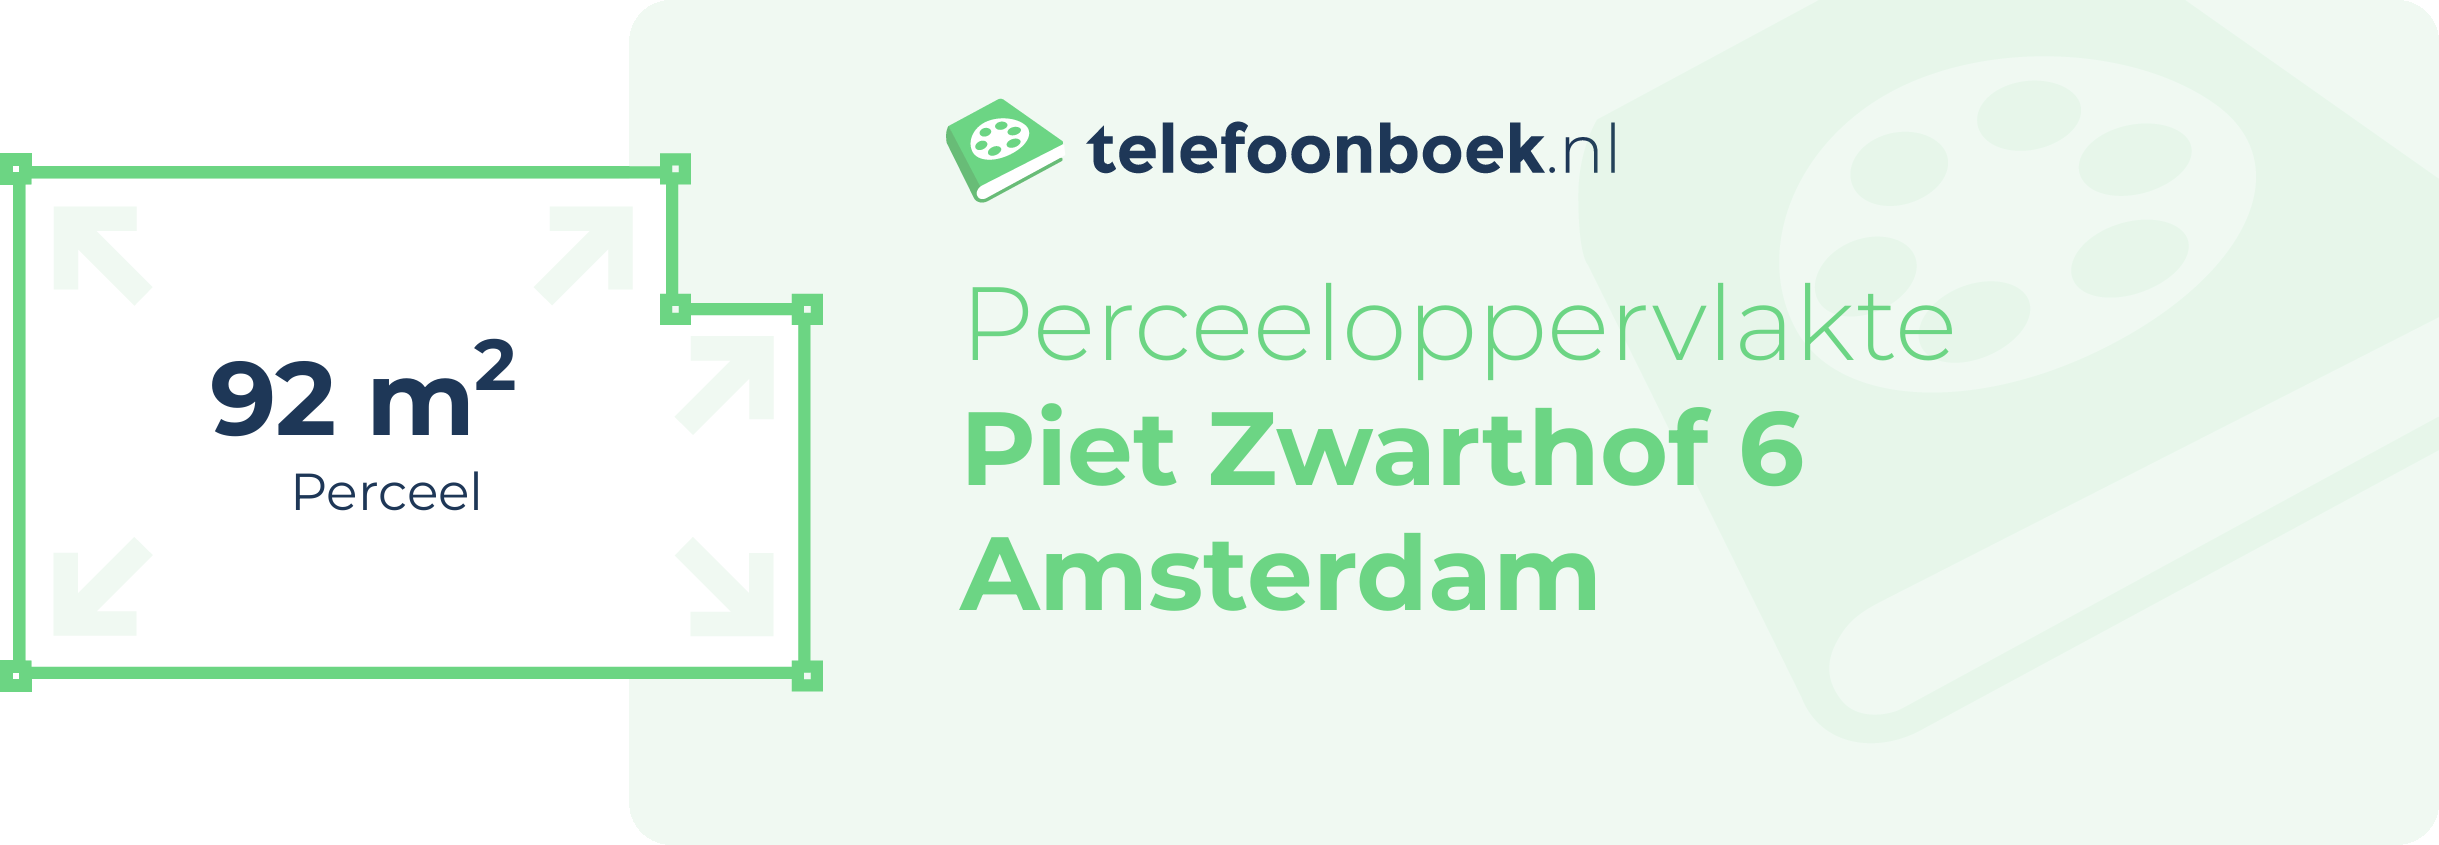 Perceeloppervlakte Piet Zwarthof 6 Amsterdam